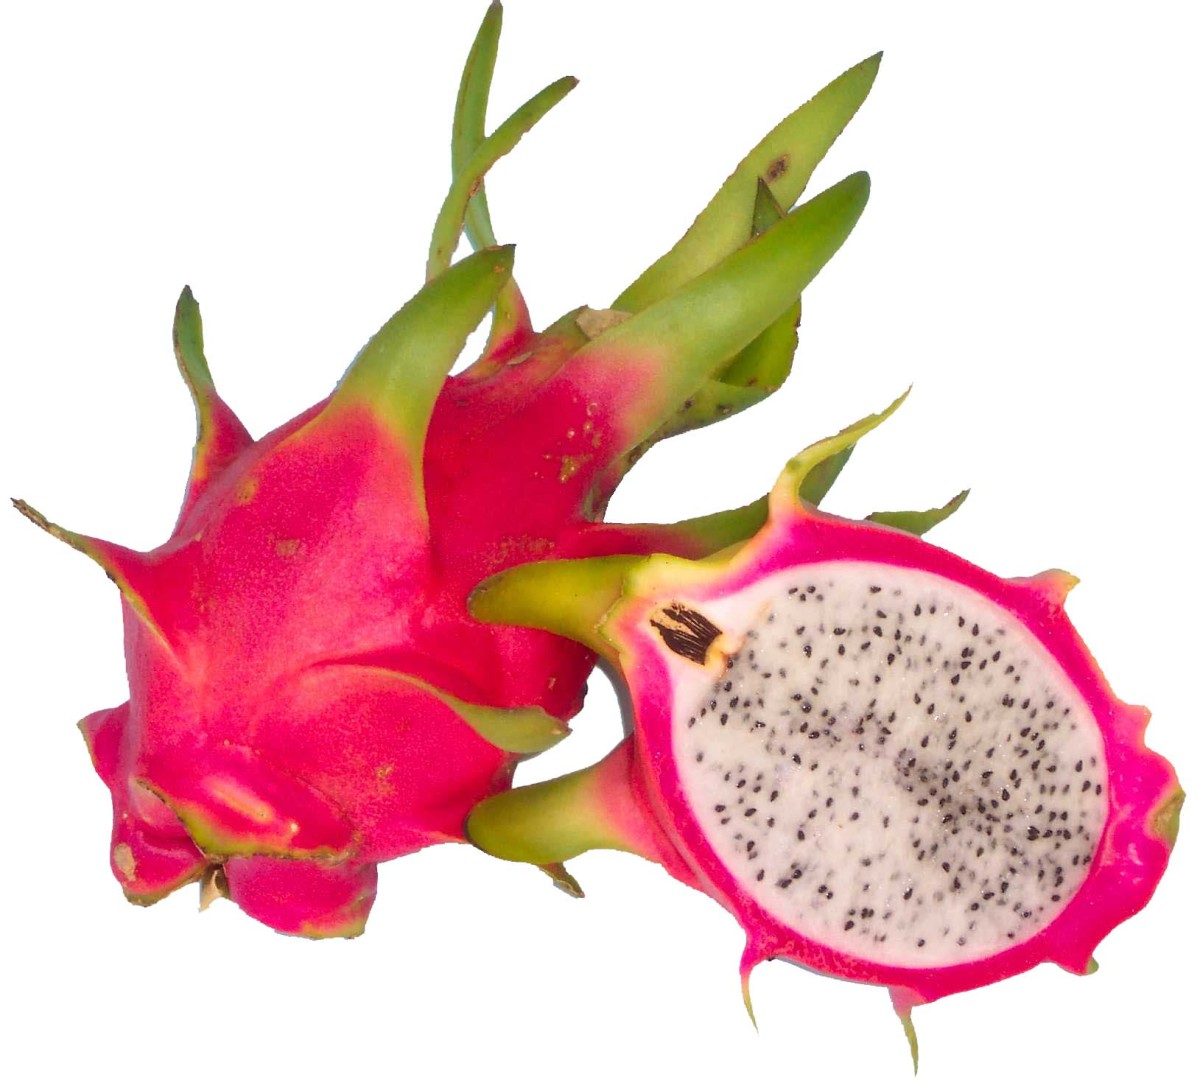 A pitaya or dragon fruit